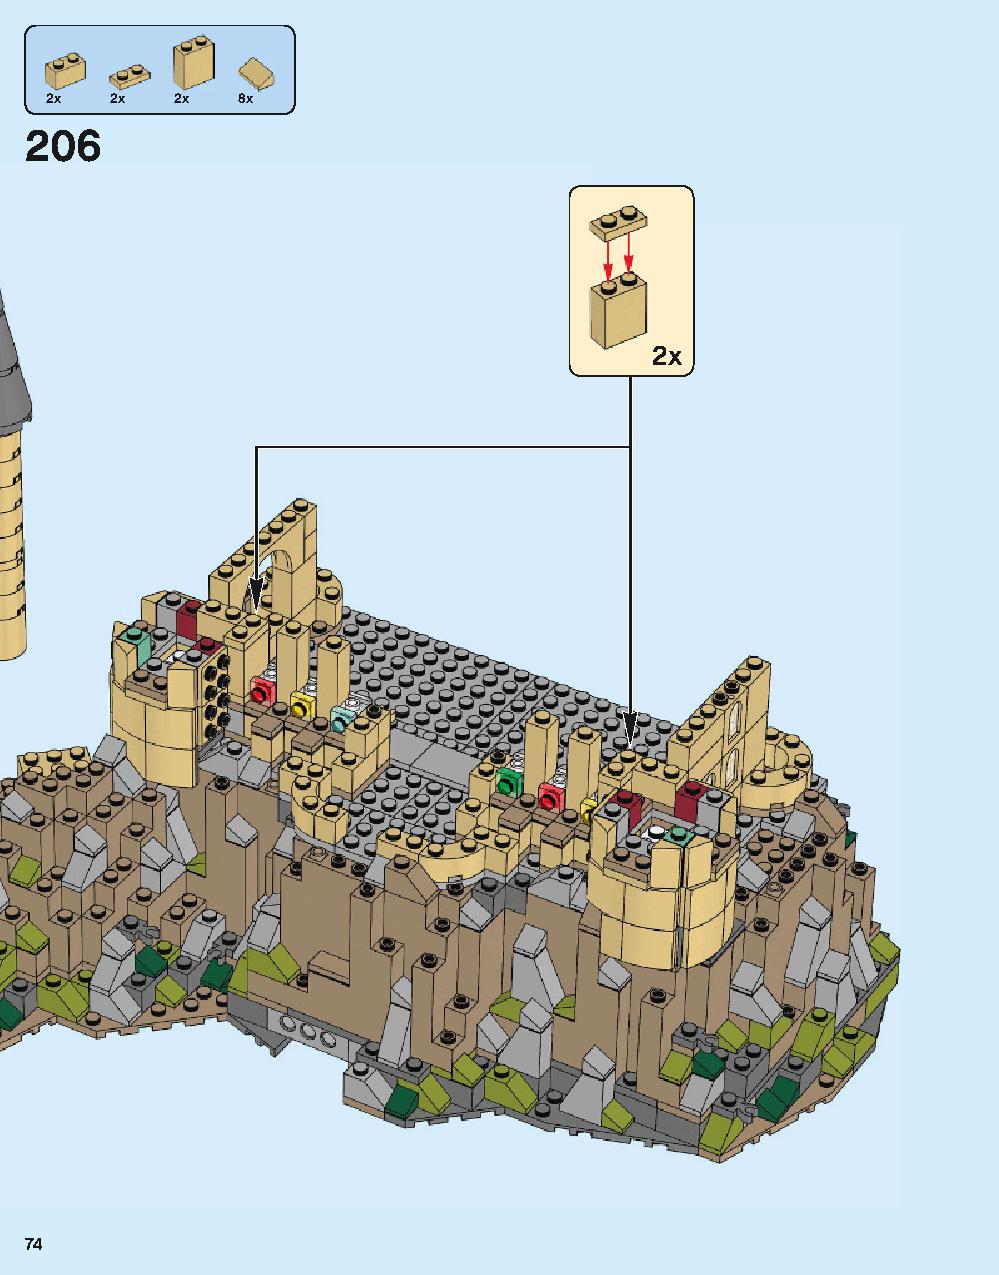 ホグワーツ城 71043 レゴの商品情報 レゴの説明書・組立方法 74 page